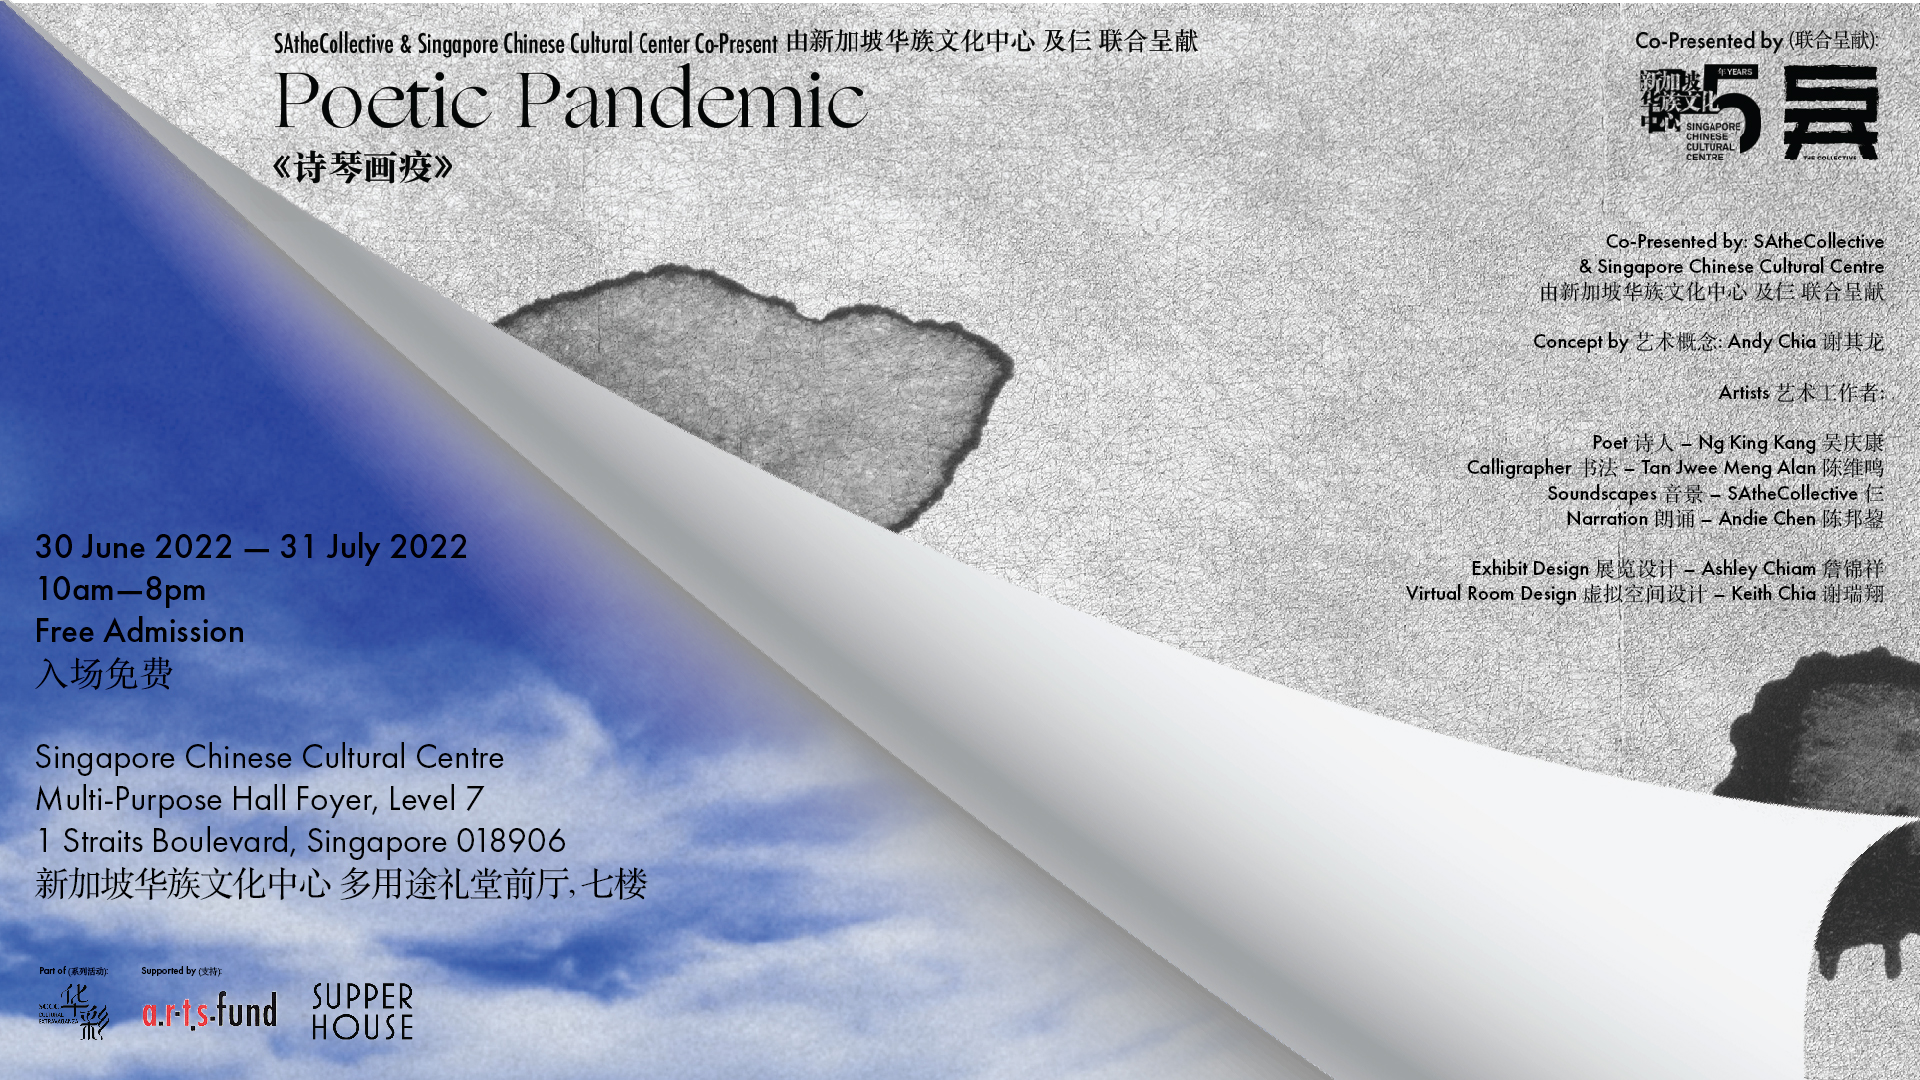 poetic-pandemic-landscape-2-01-2